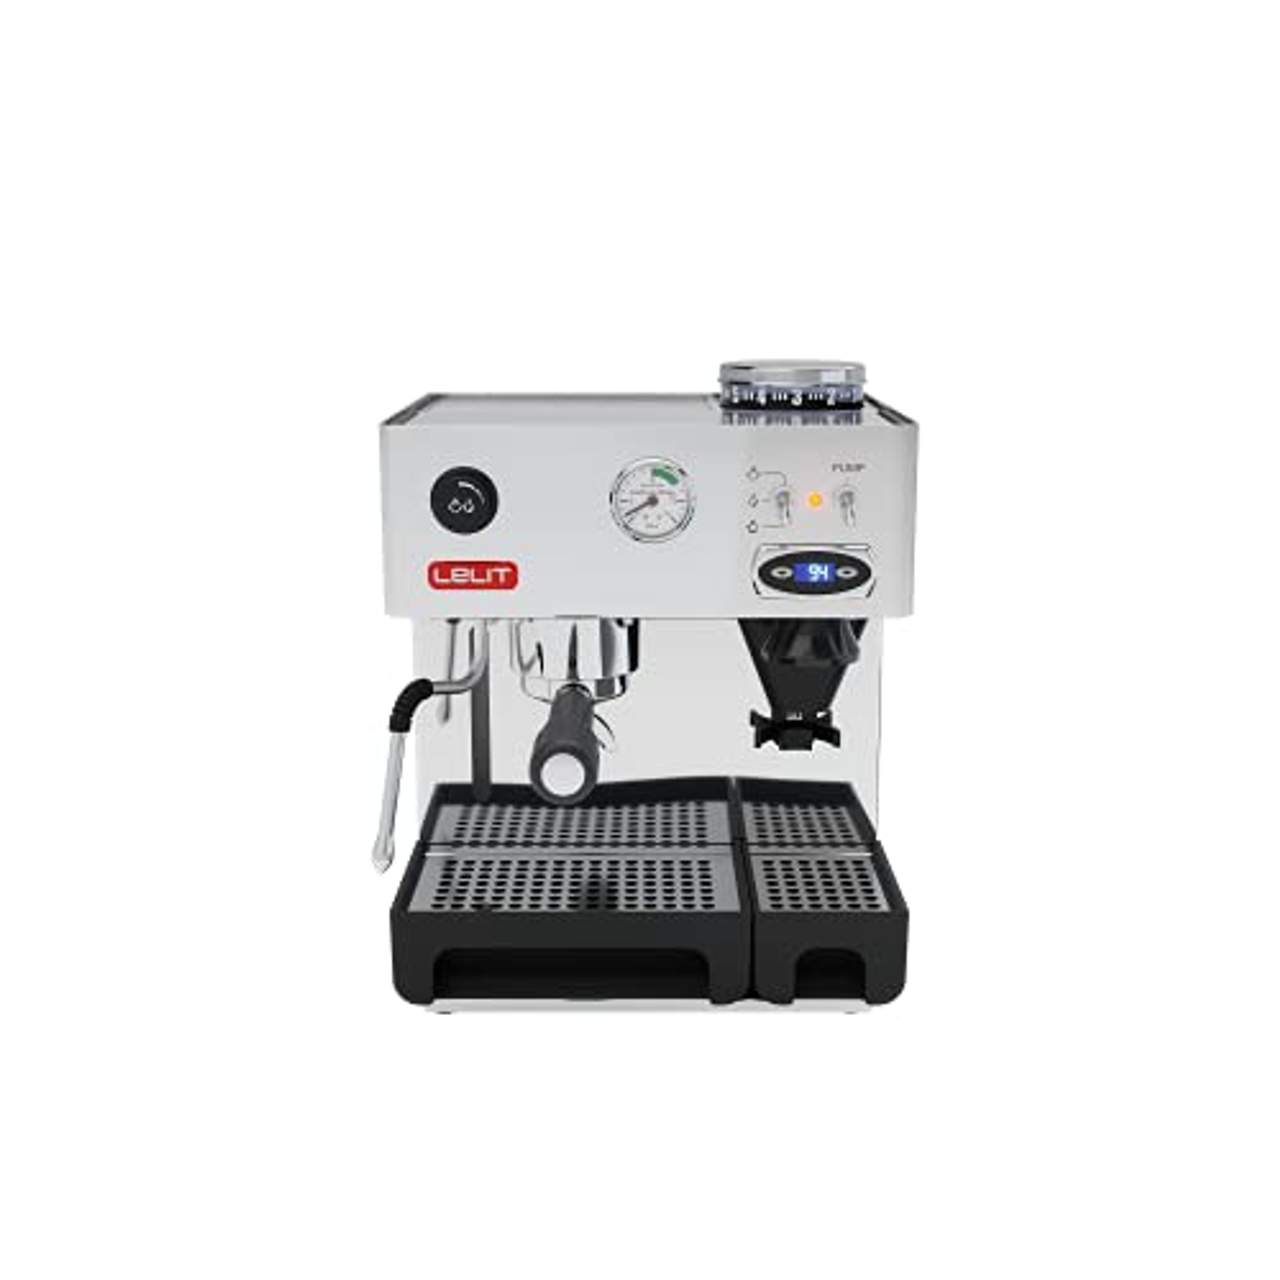 Lelit Anita PL042TEMD semi-professionelle Kaffeemaschine